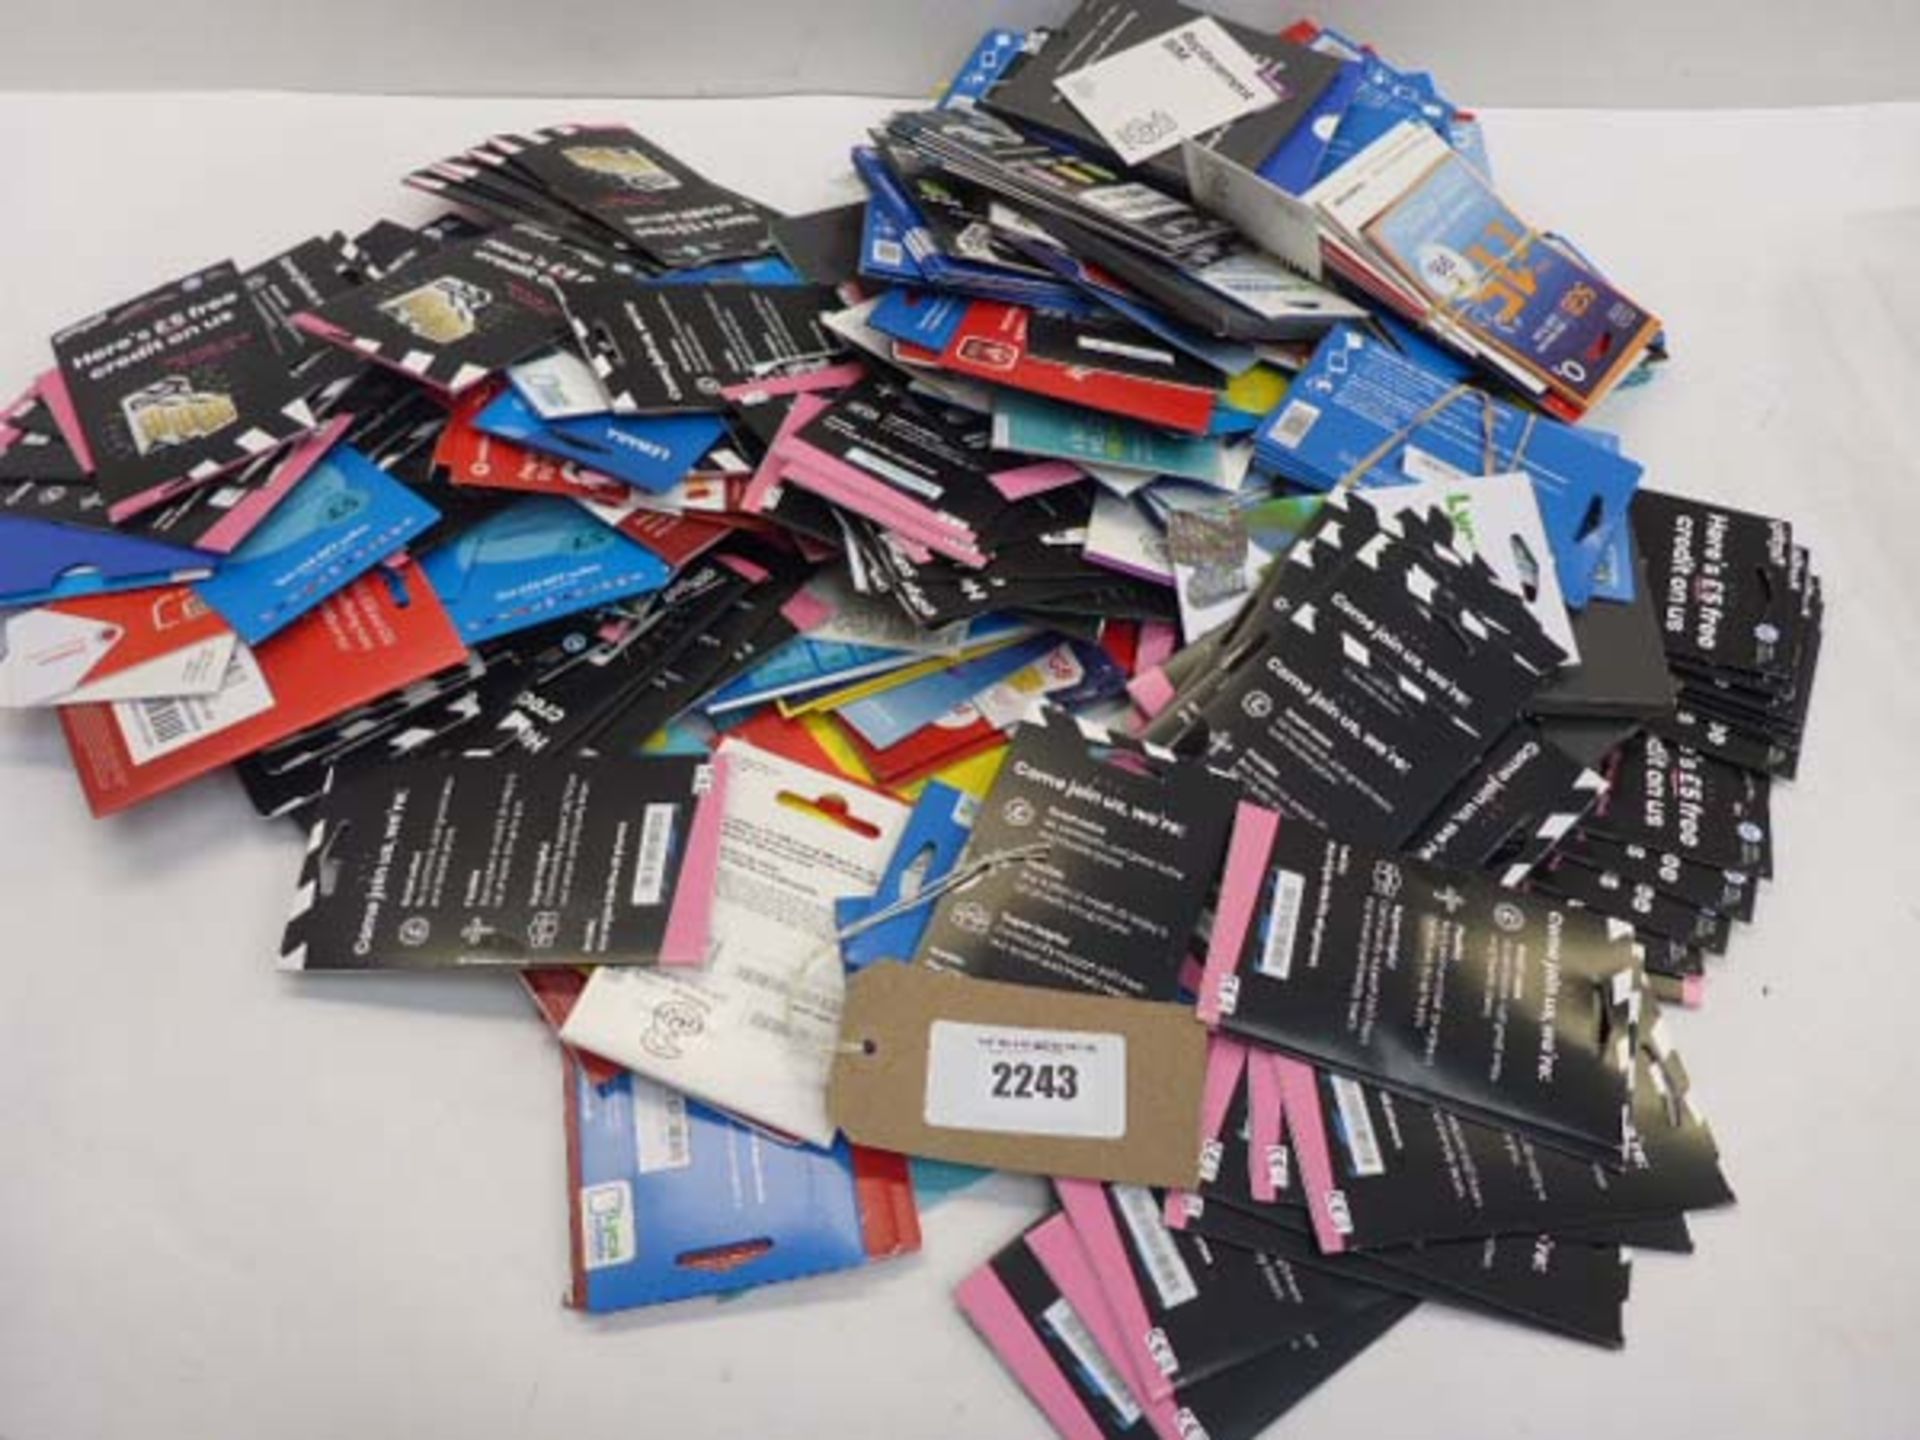 Bag containing quantity of various SIM cards